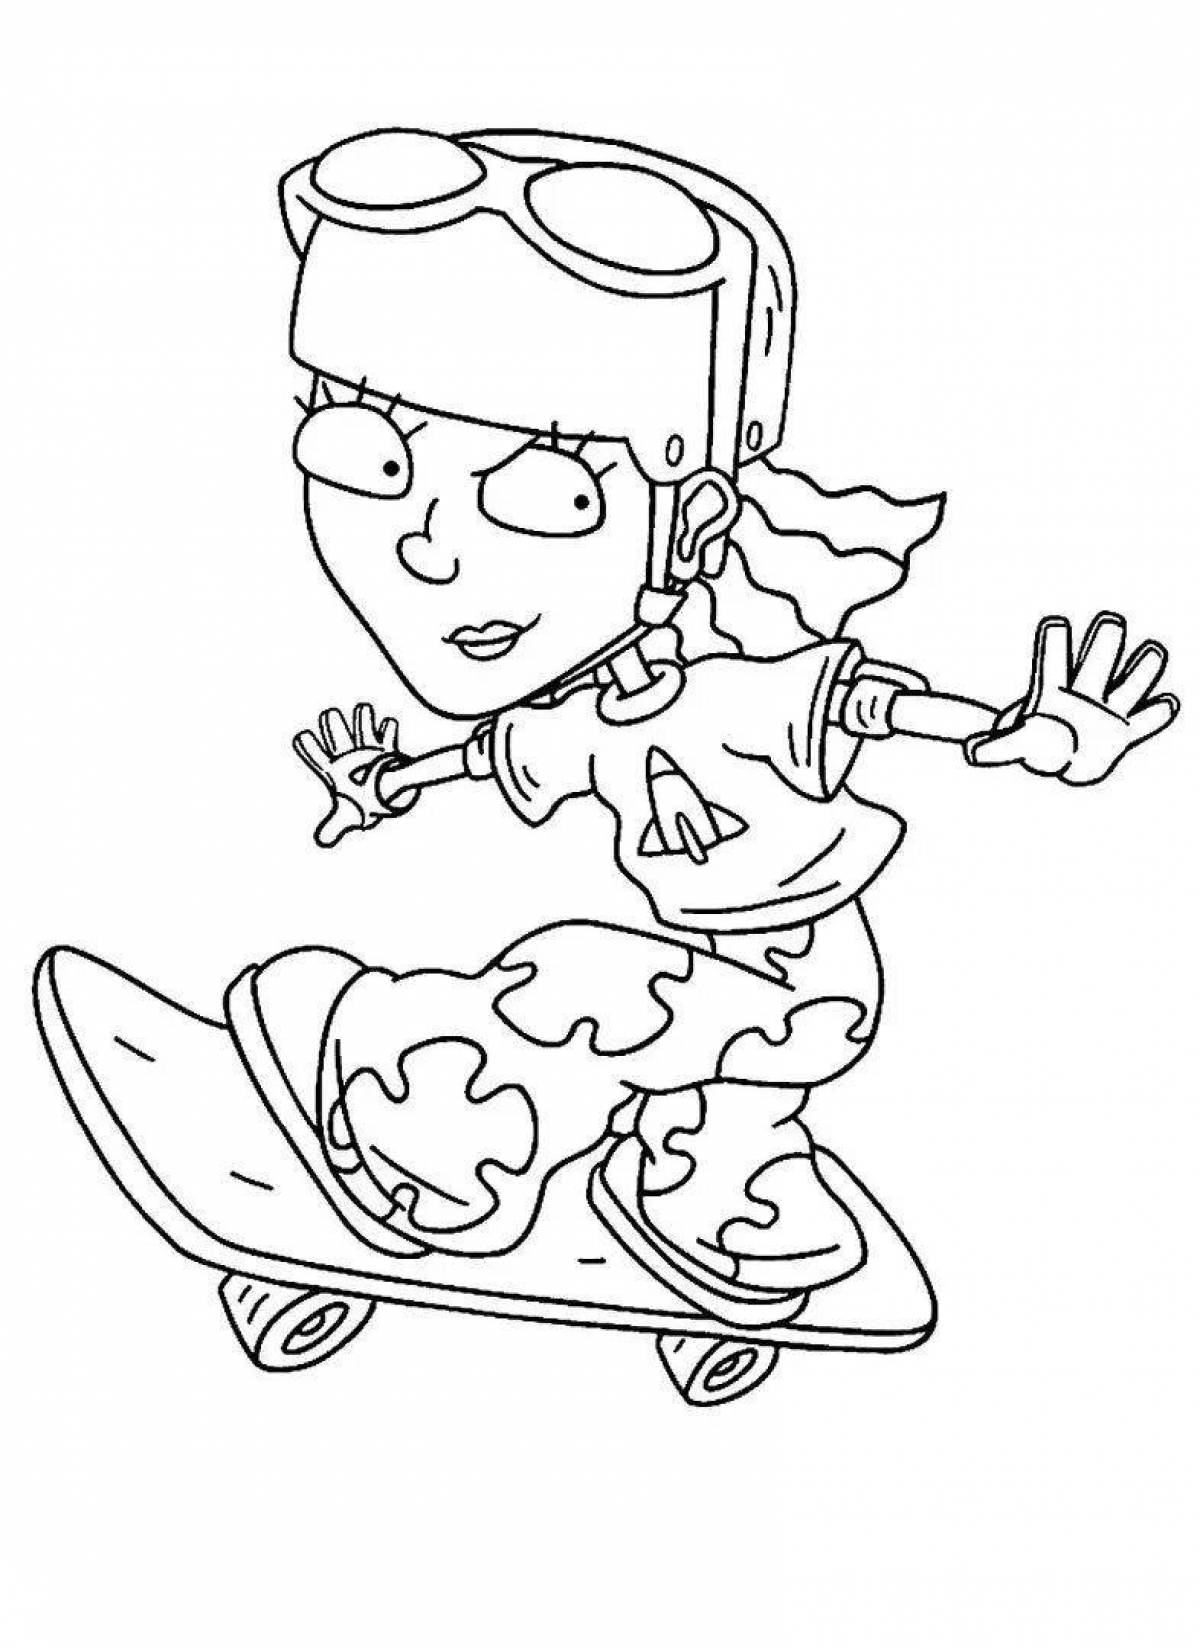 Stylish girl on a skateboard